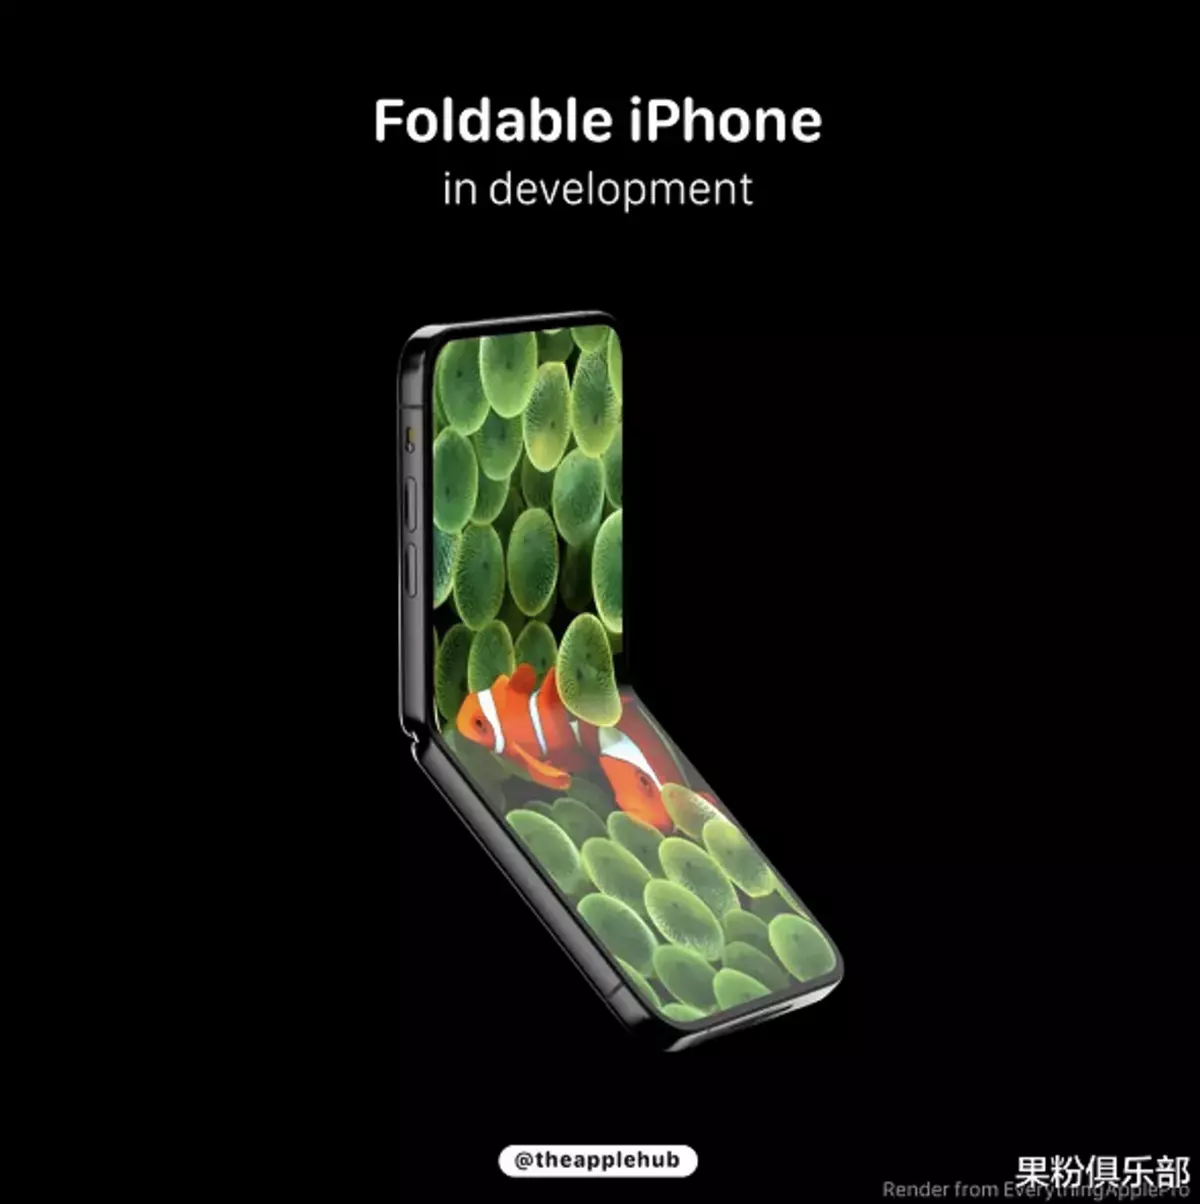 LG-skærm vil producere fleksible OLED-paneler til ny folding iPhone